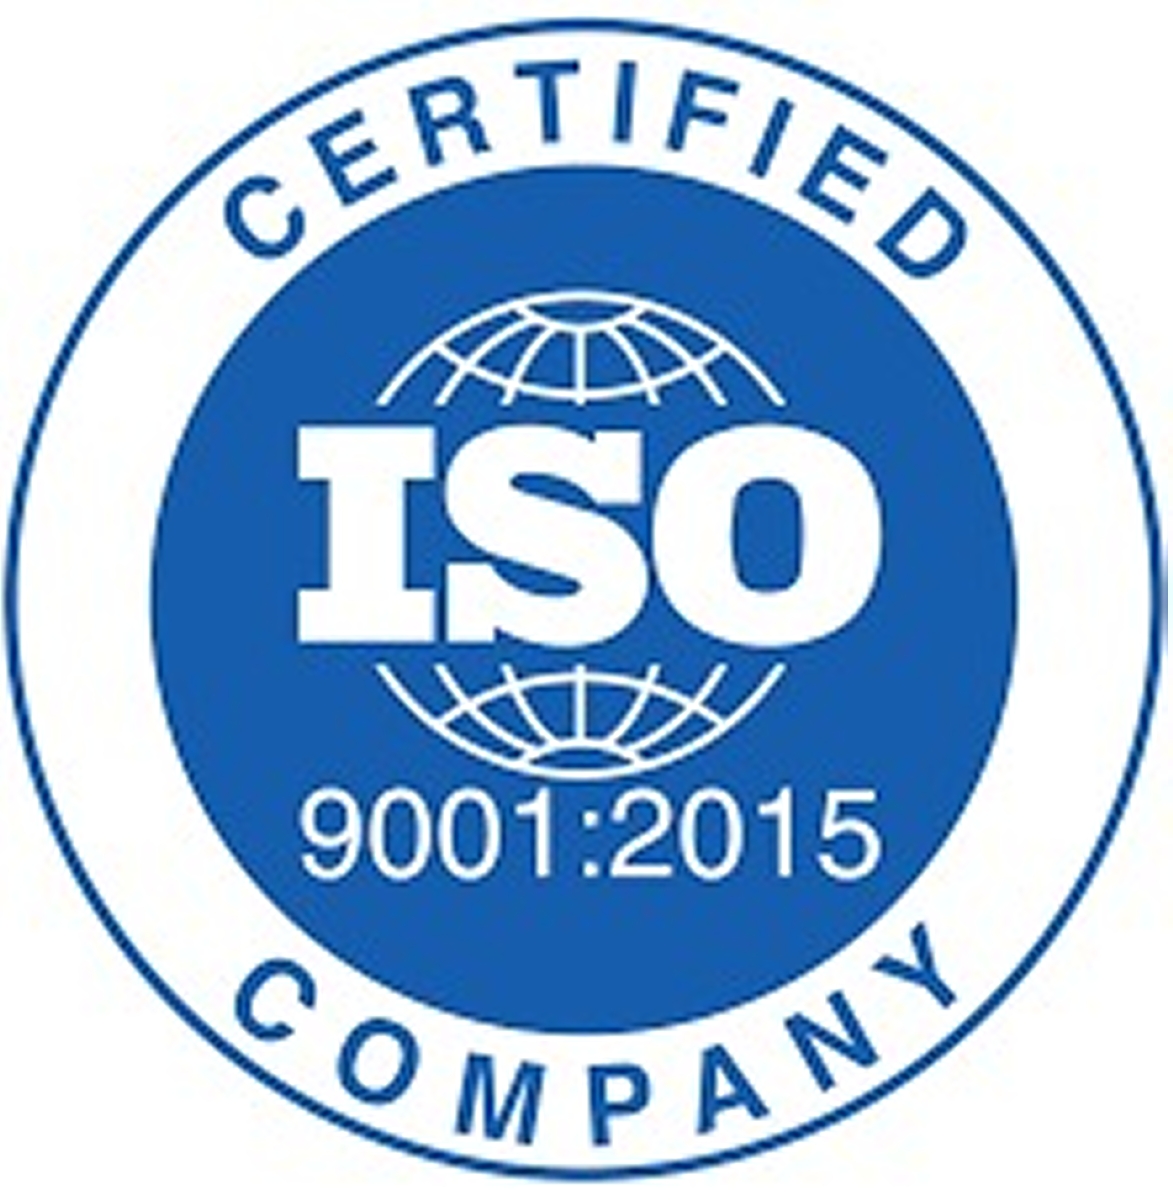 MULTIAX erhält die Zertifizierung nach ISO 9001: 2015